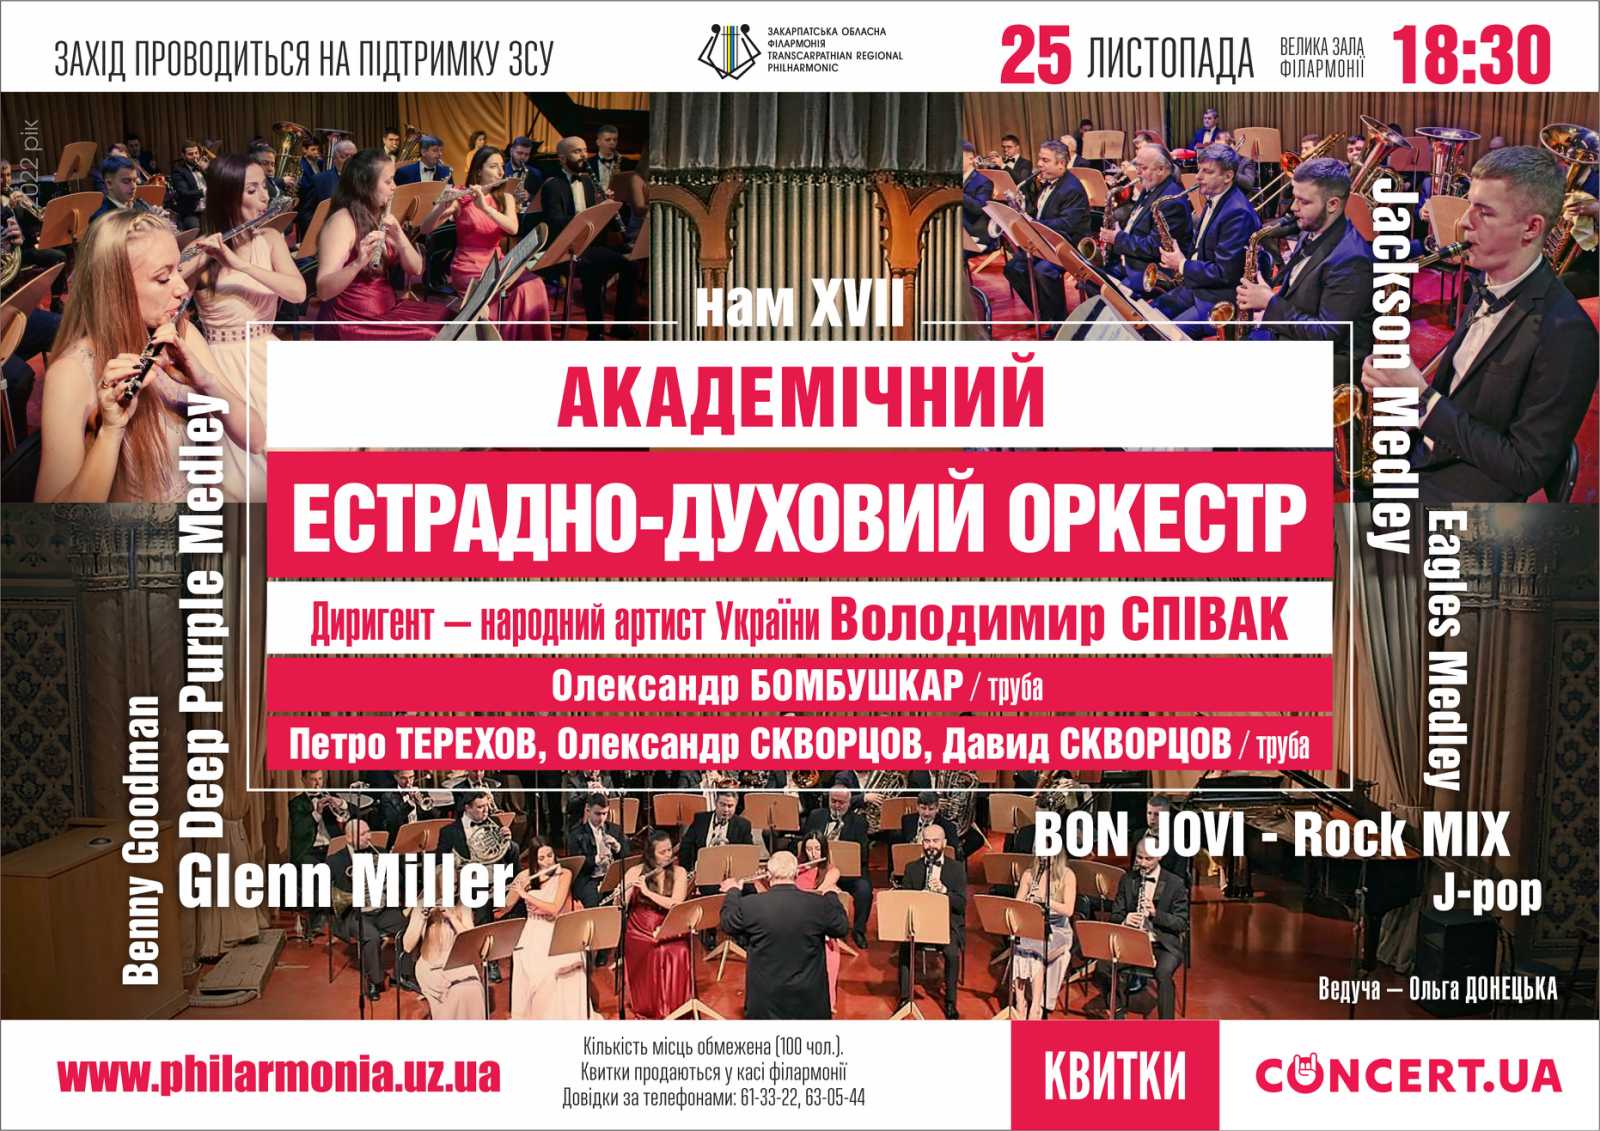 Академічний естрадно-духовий оркестр Закарпатської обласної філармонії дасть концерт з нагоди річниці створення